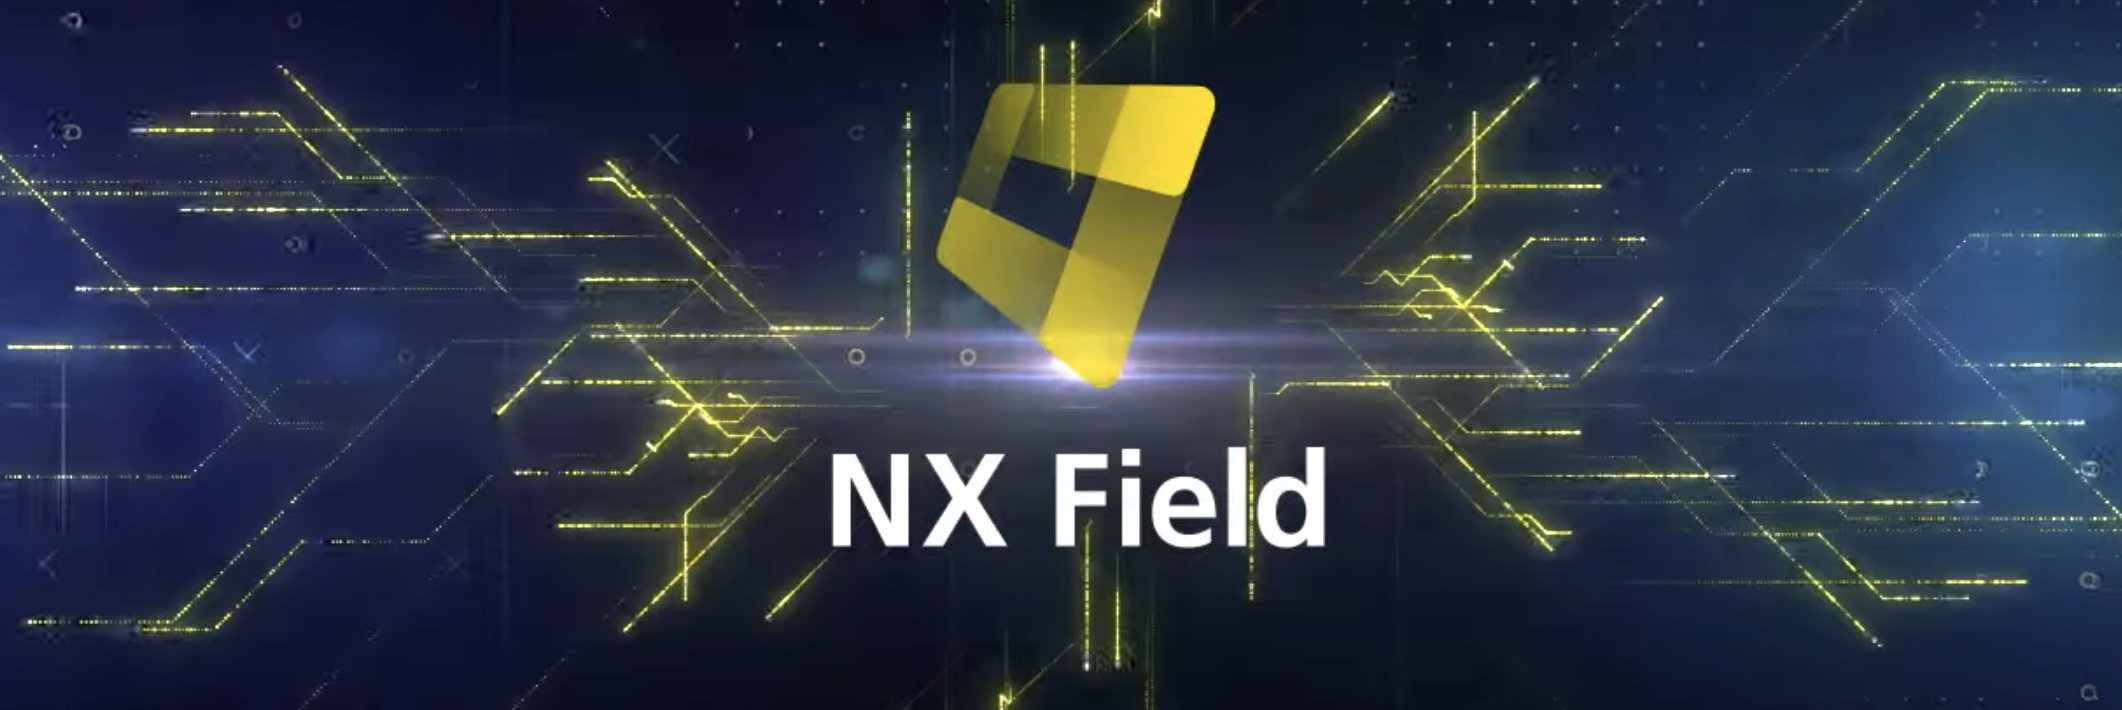 NX Field – software pro dálkově ovládané fotografování